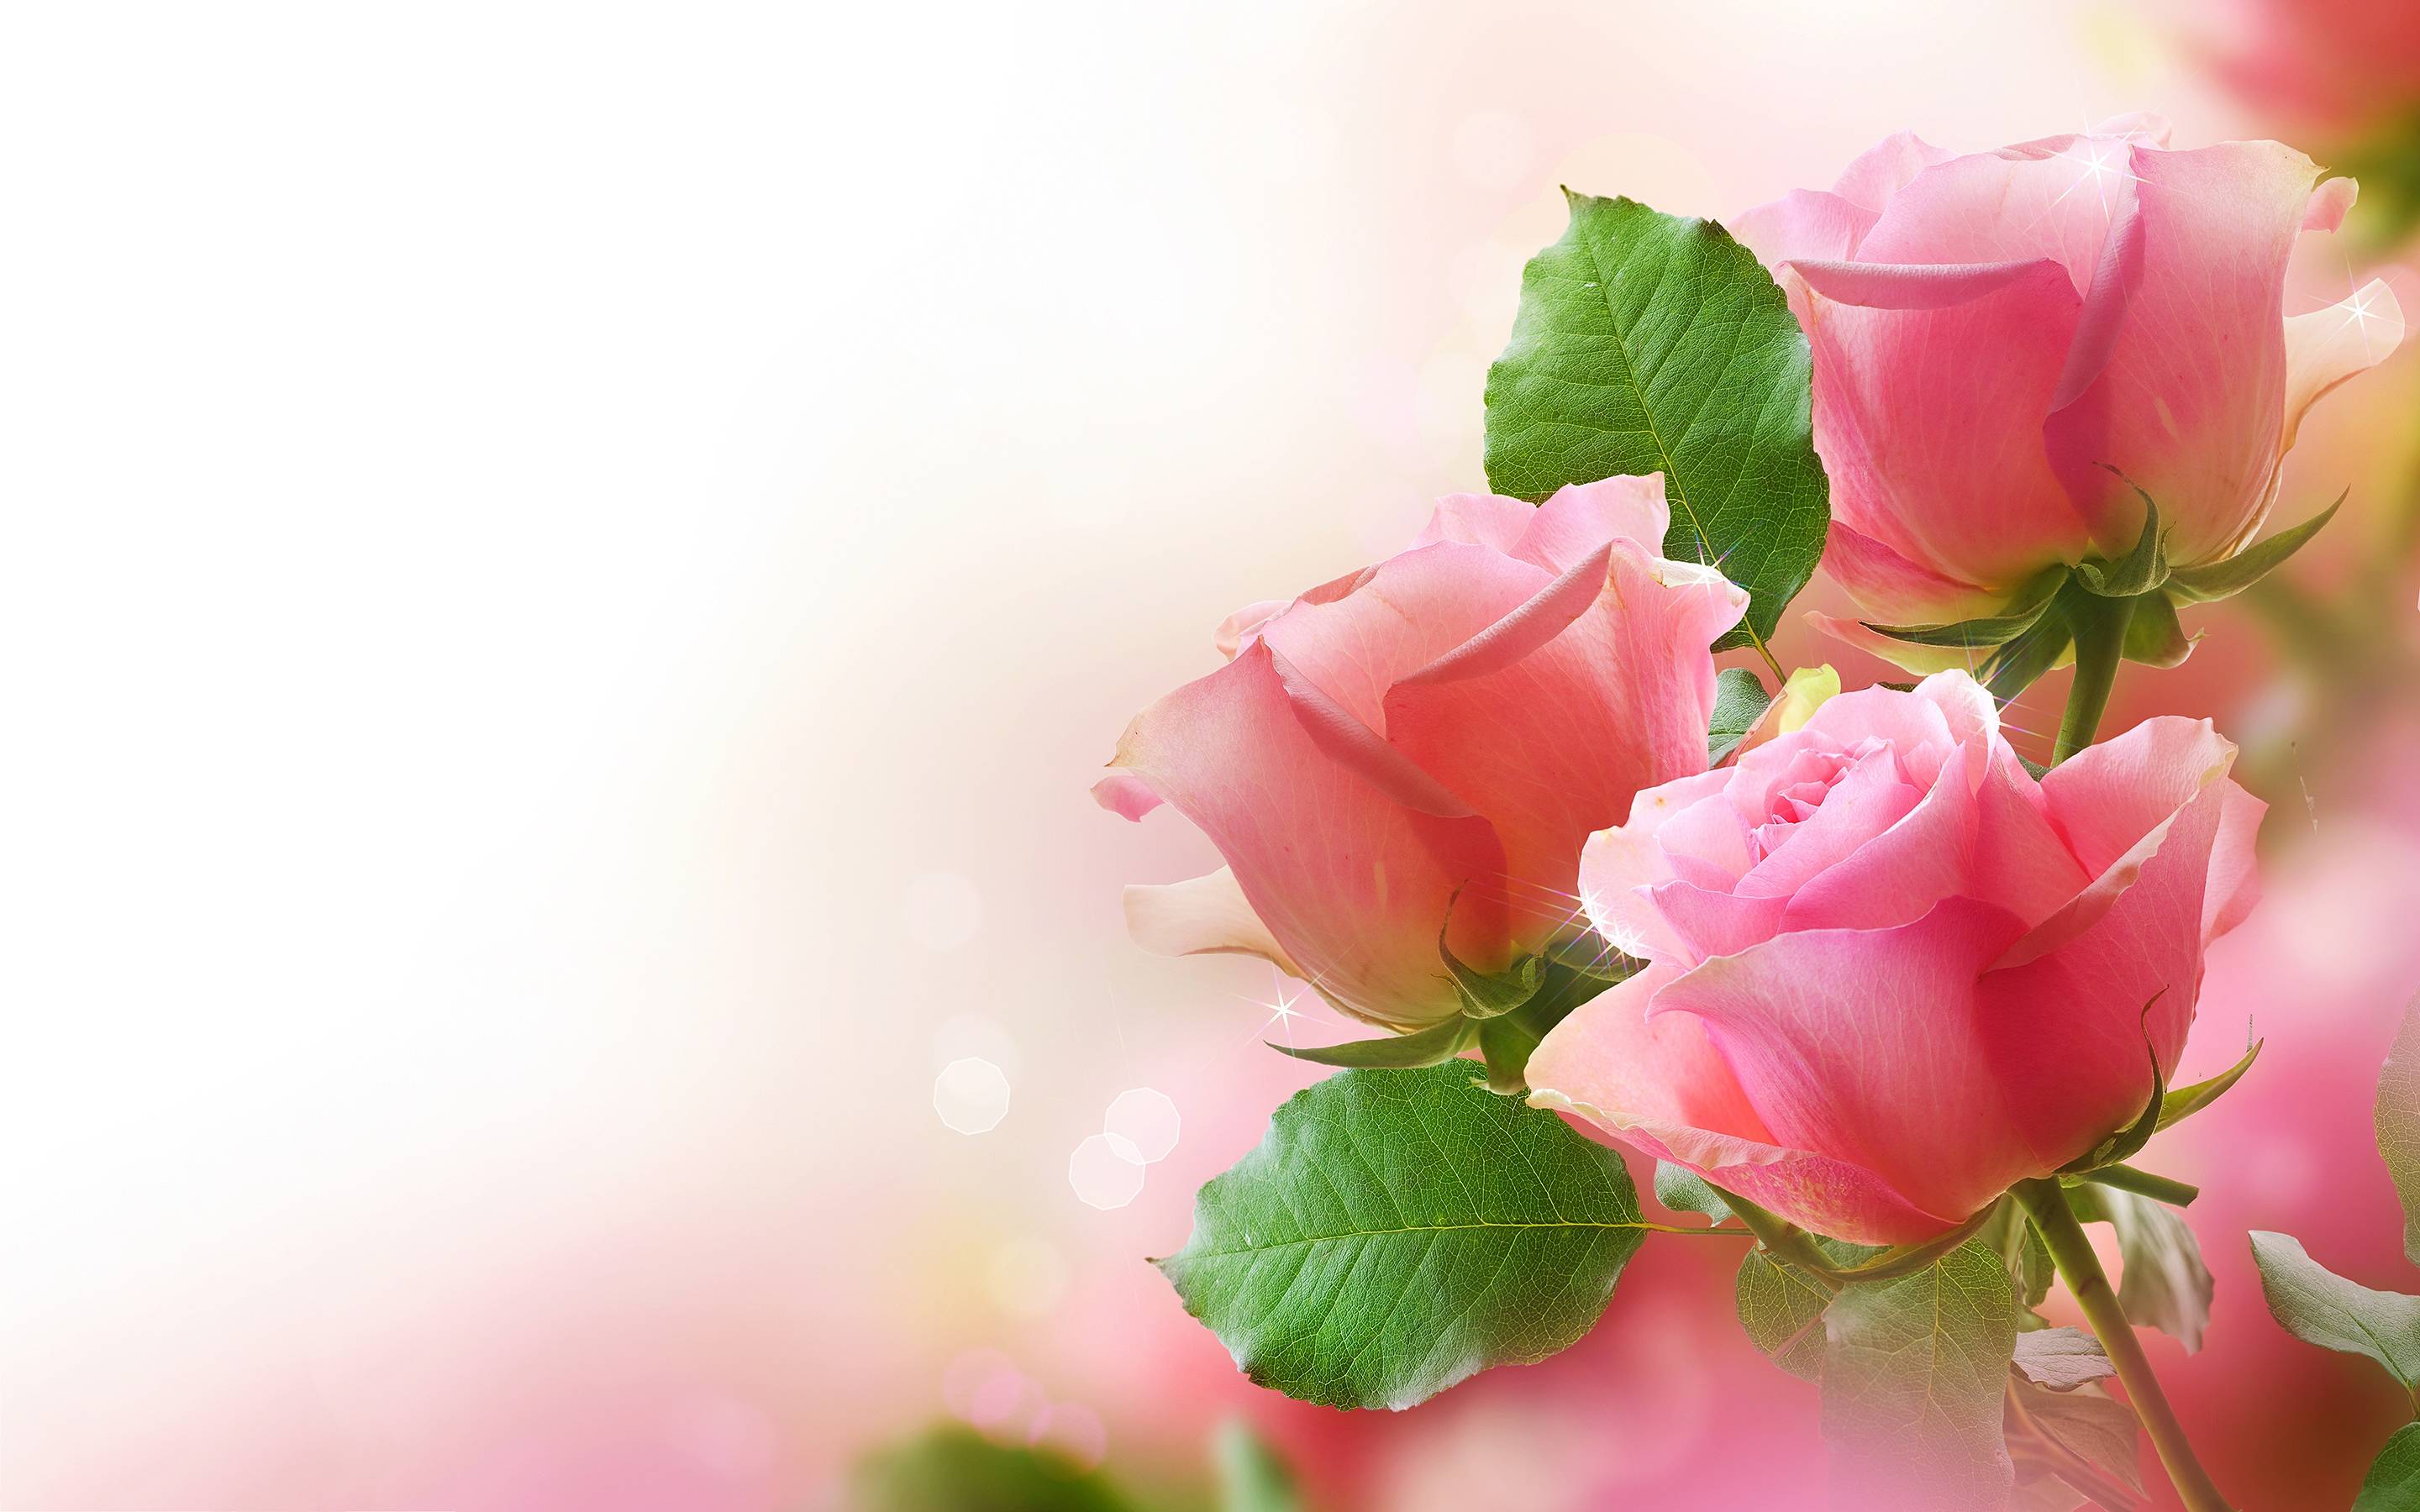 Roses Background Image